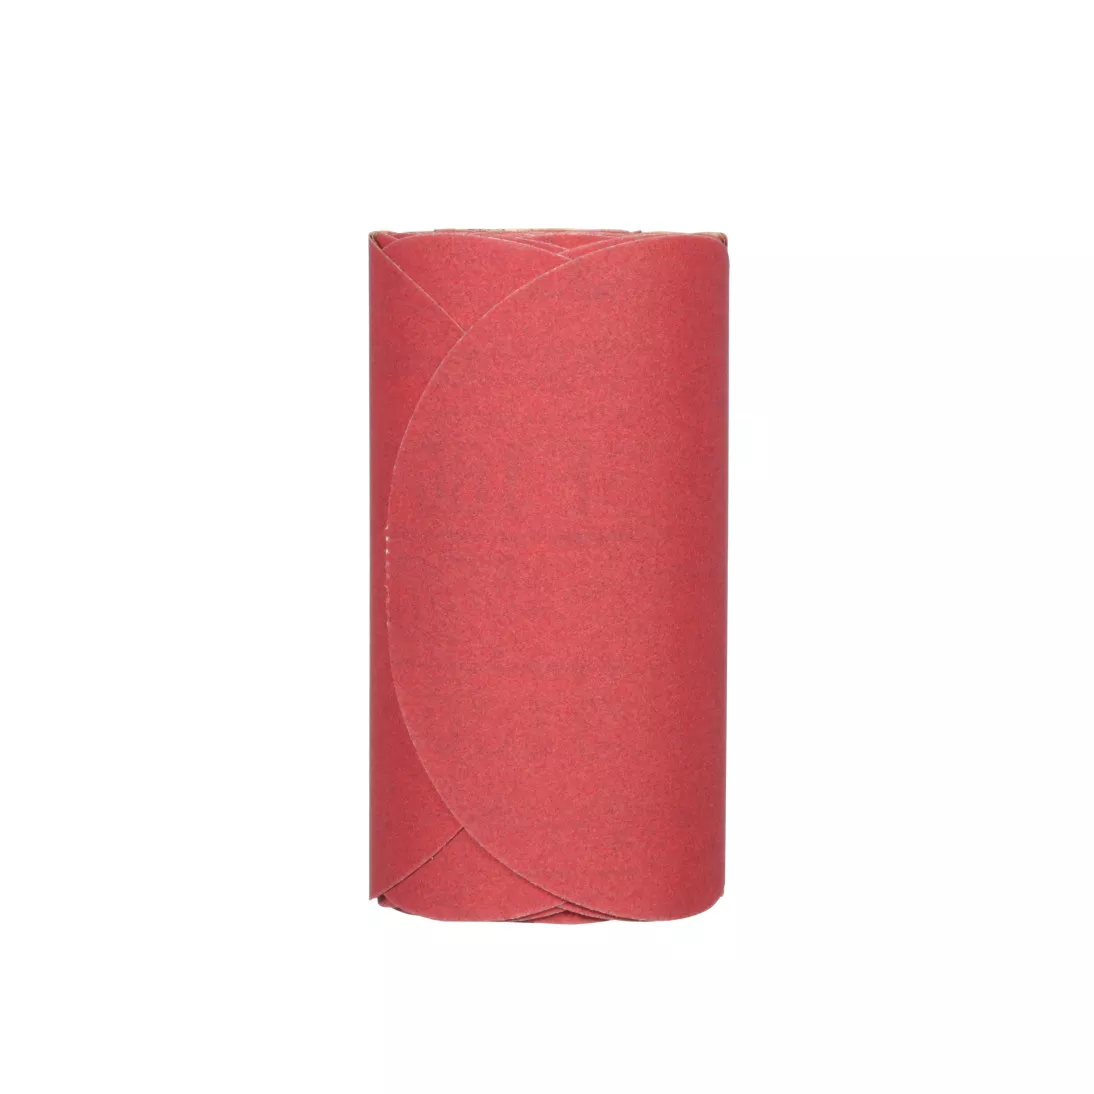 3M™ Red Abrasive Stikit™ Disc, 01112, 6 in, P180 grade, 100 discs per
roll, 6 rolls per case